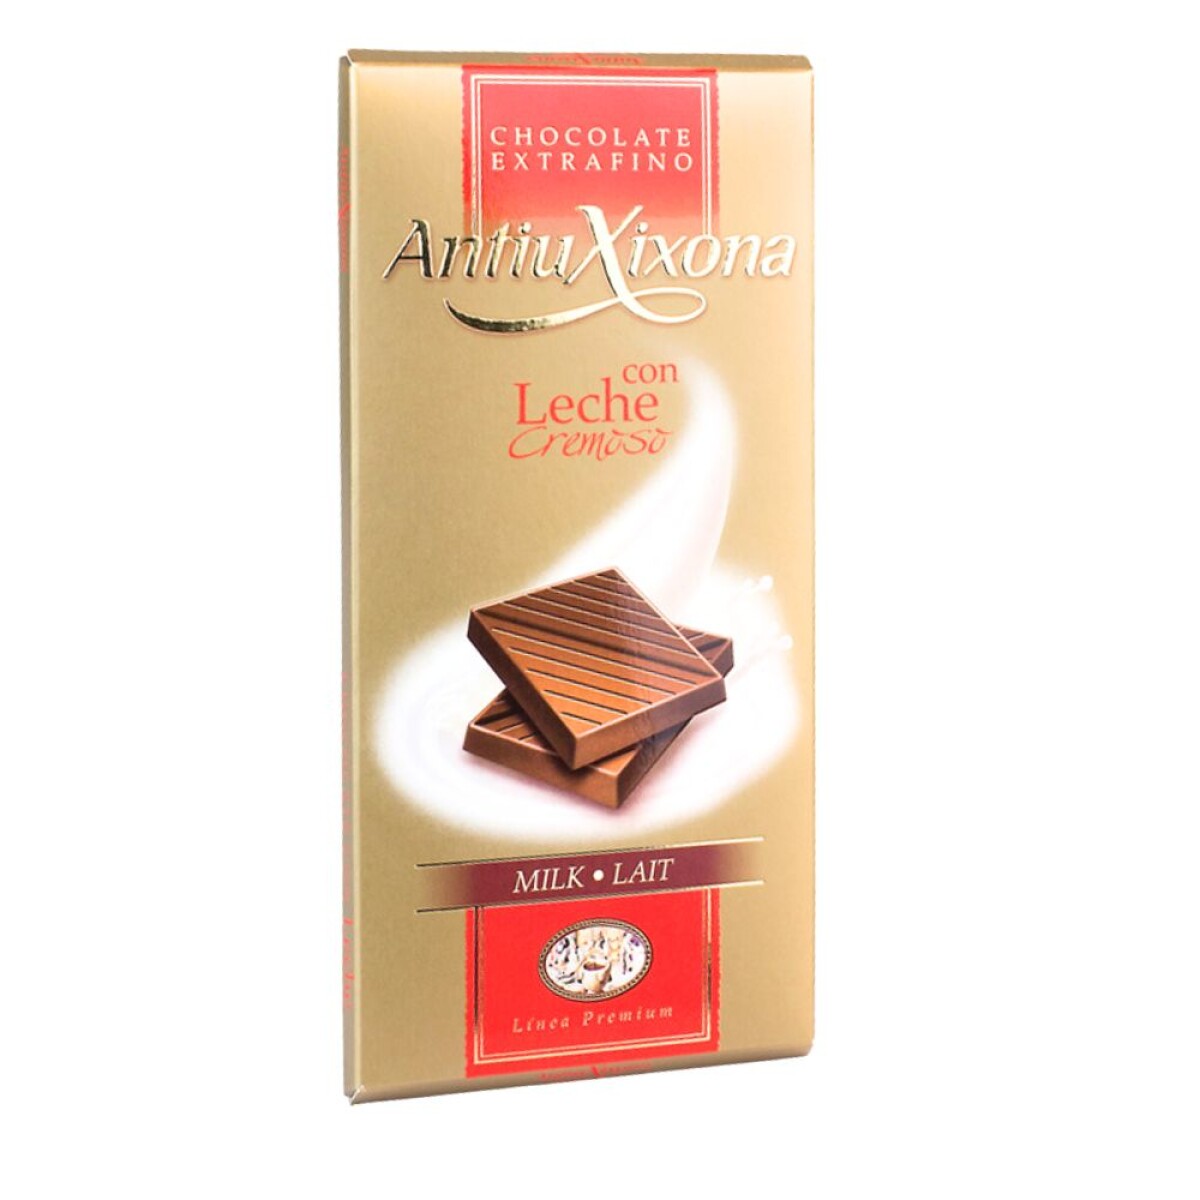 Chocolate Con Leche Cremoso AntiuXixona 